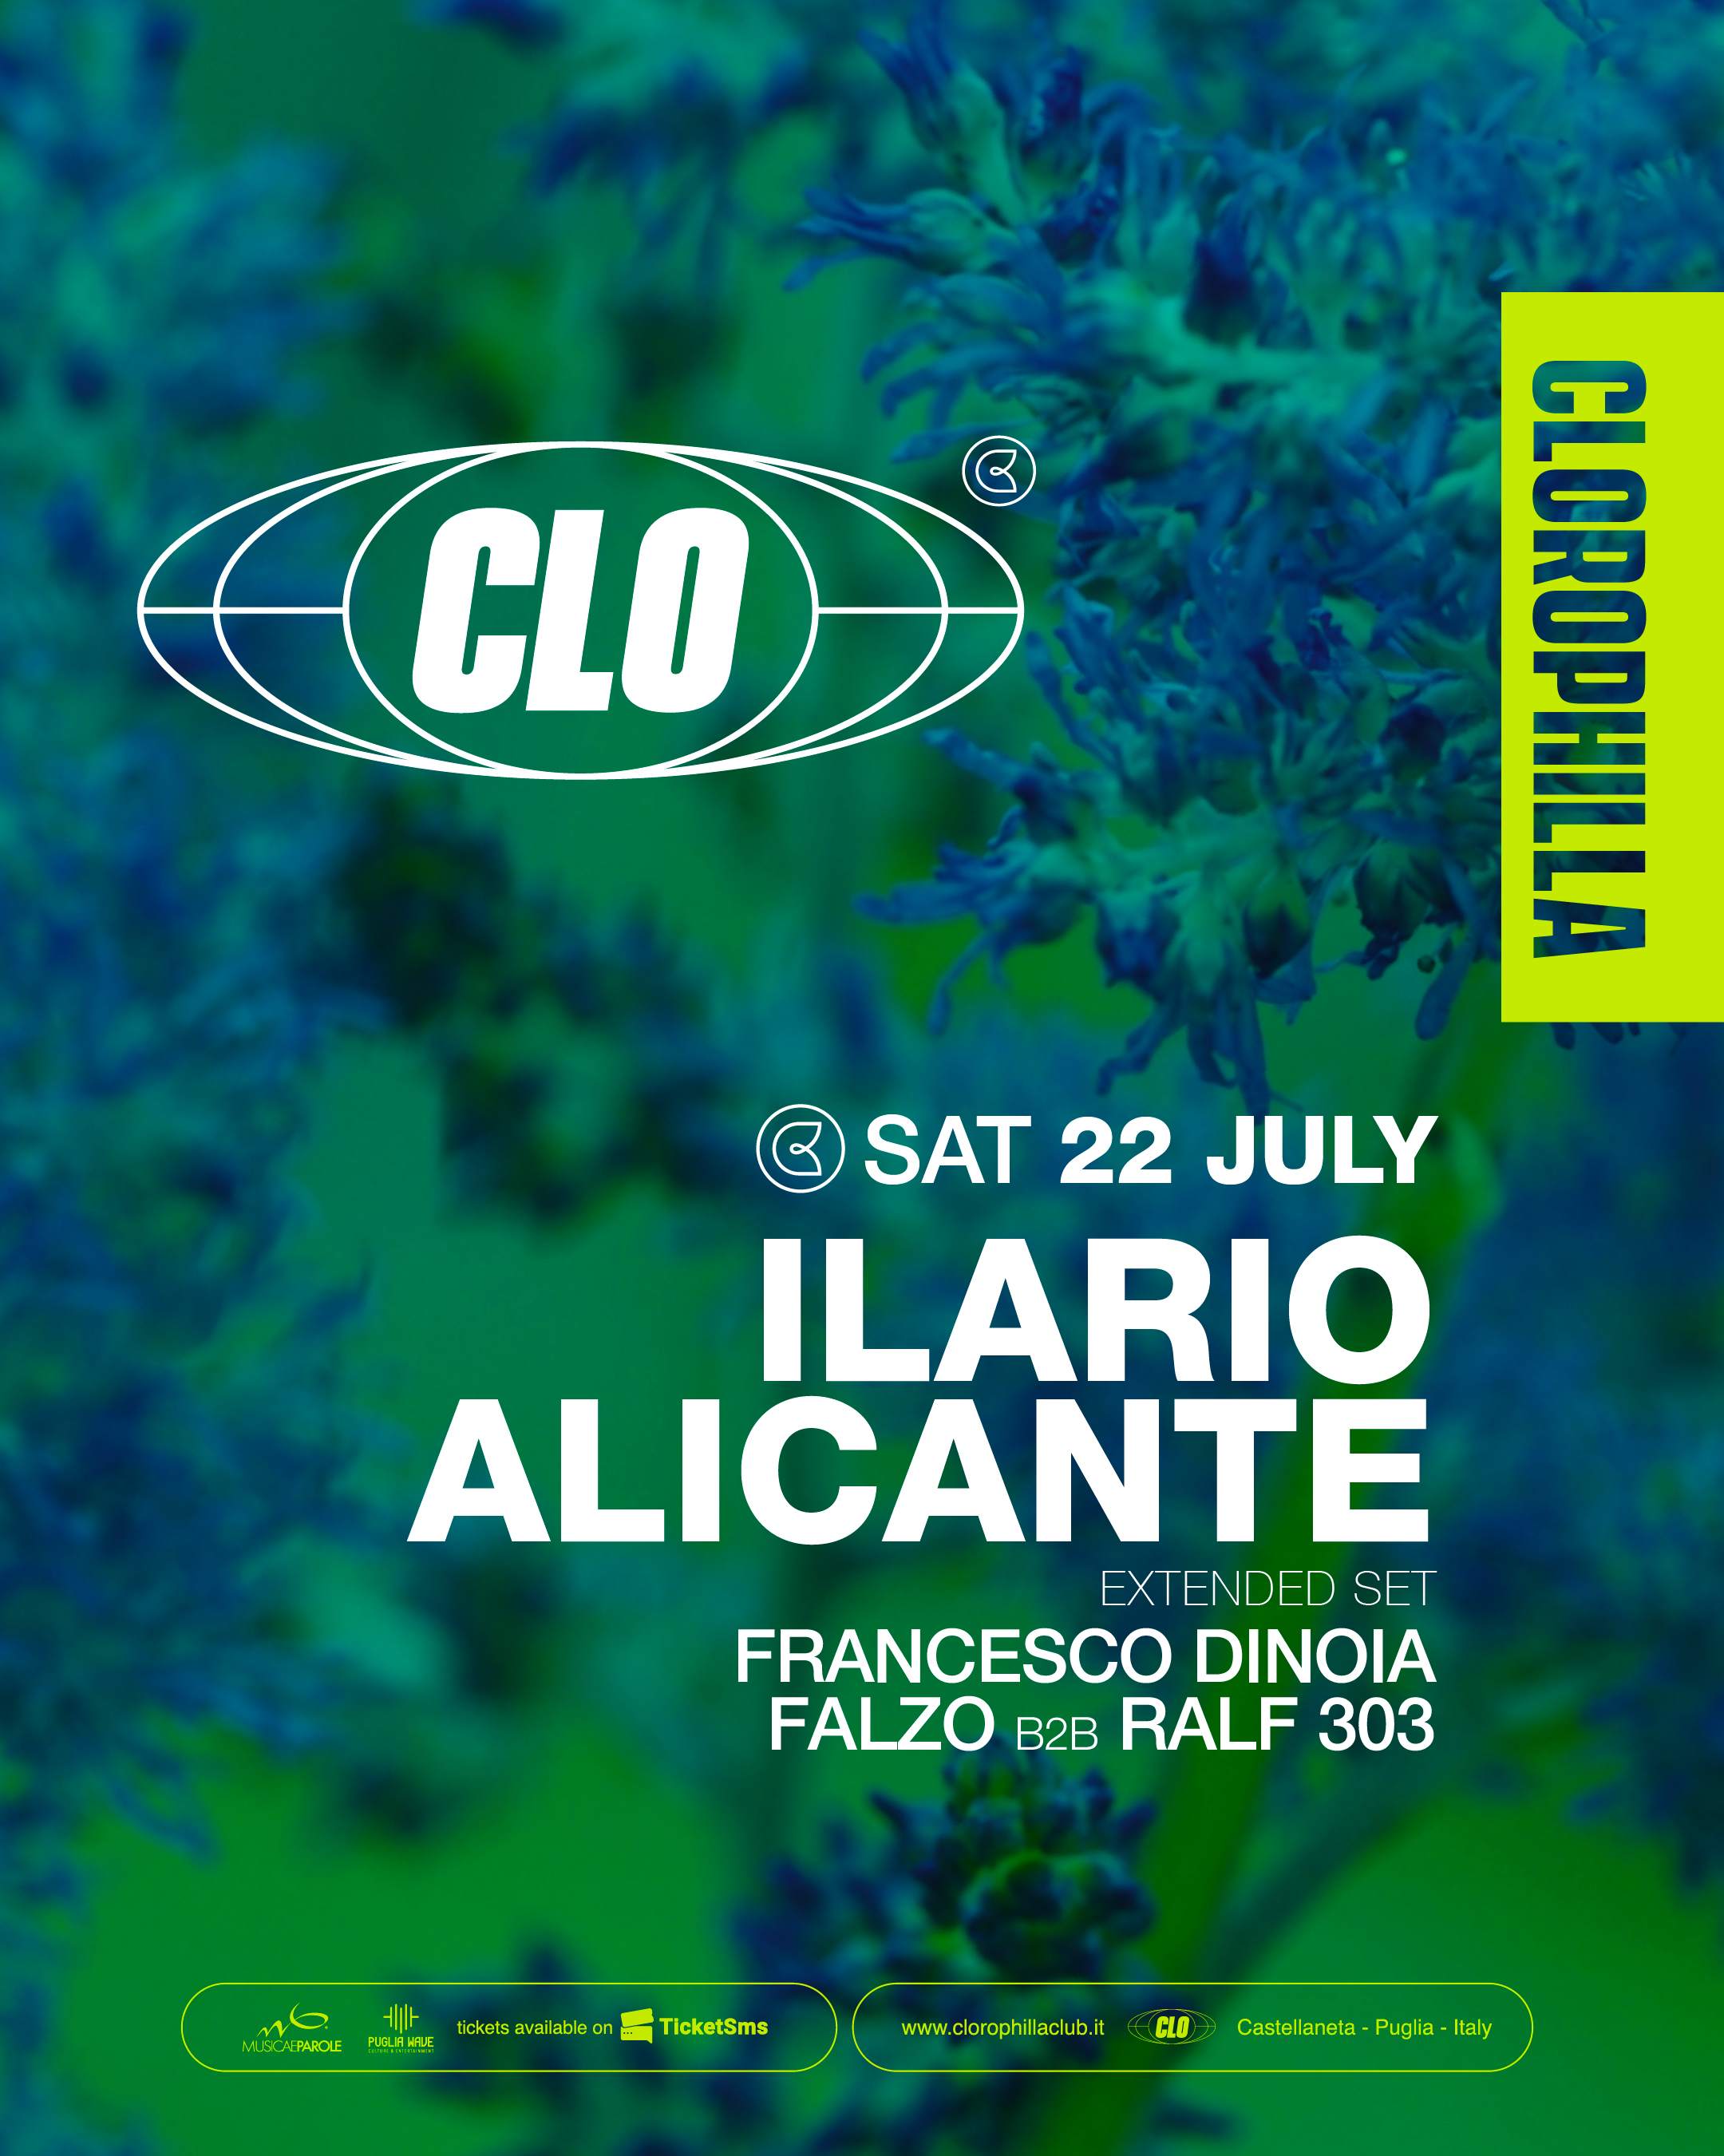 Clorophilla Club with Ilario Alicante, Francesco Dinoia, Falzo b2b Ralf303 - Página frontal